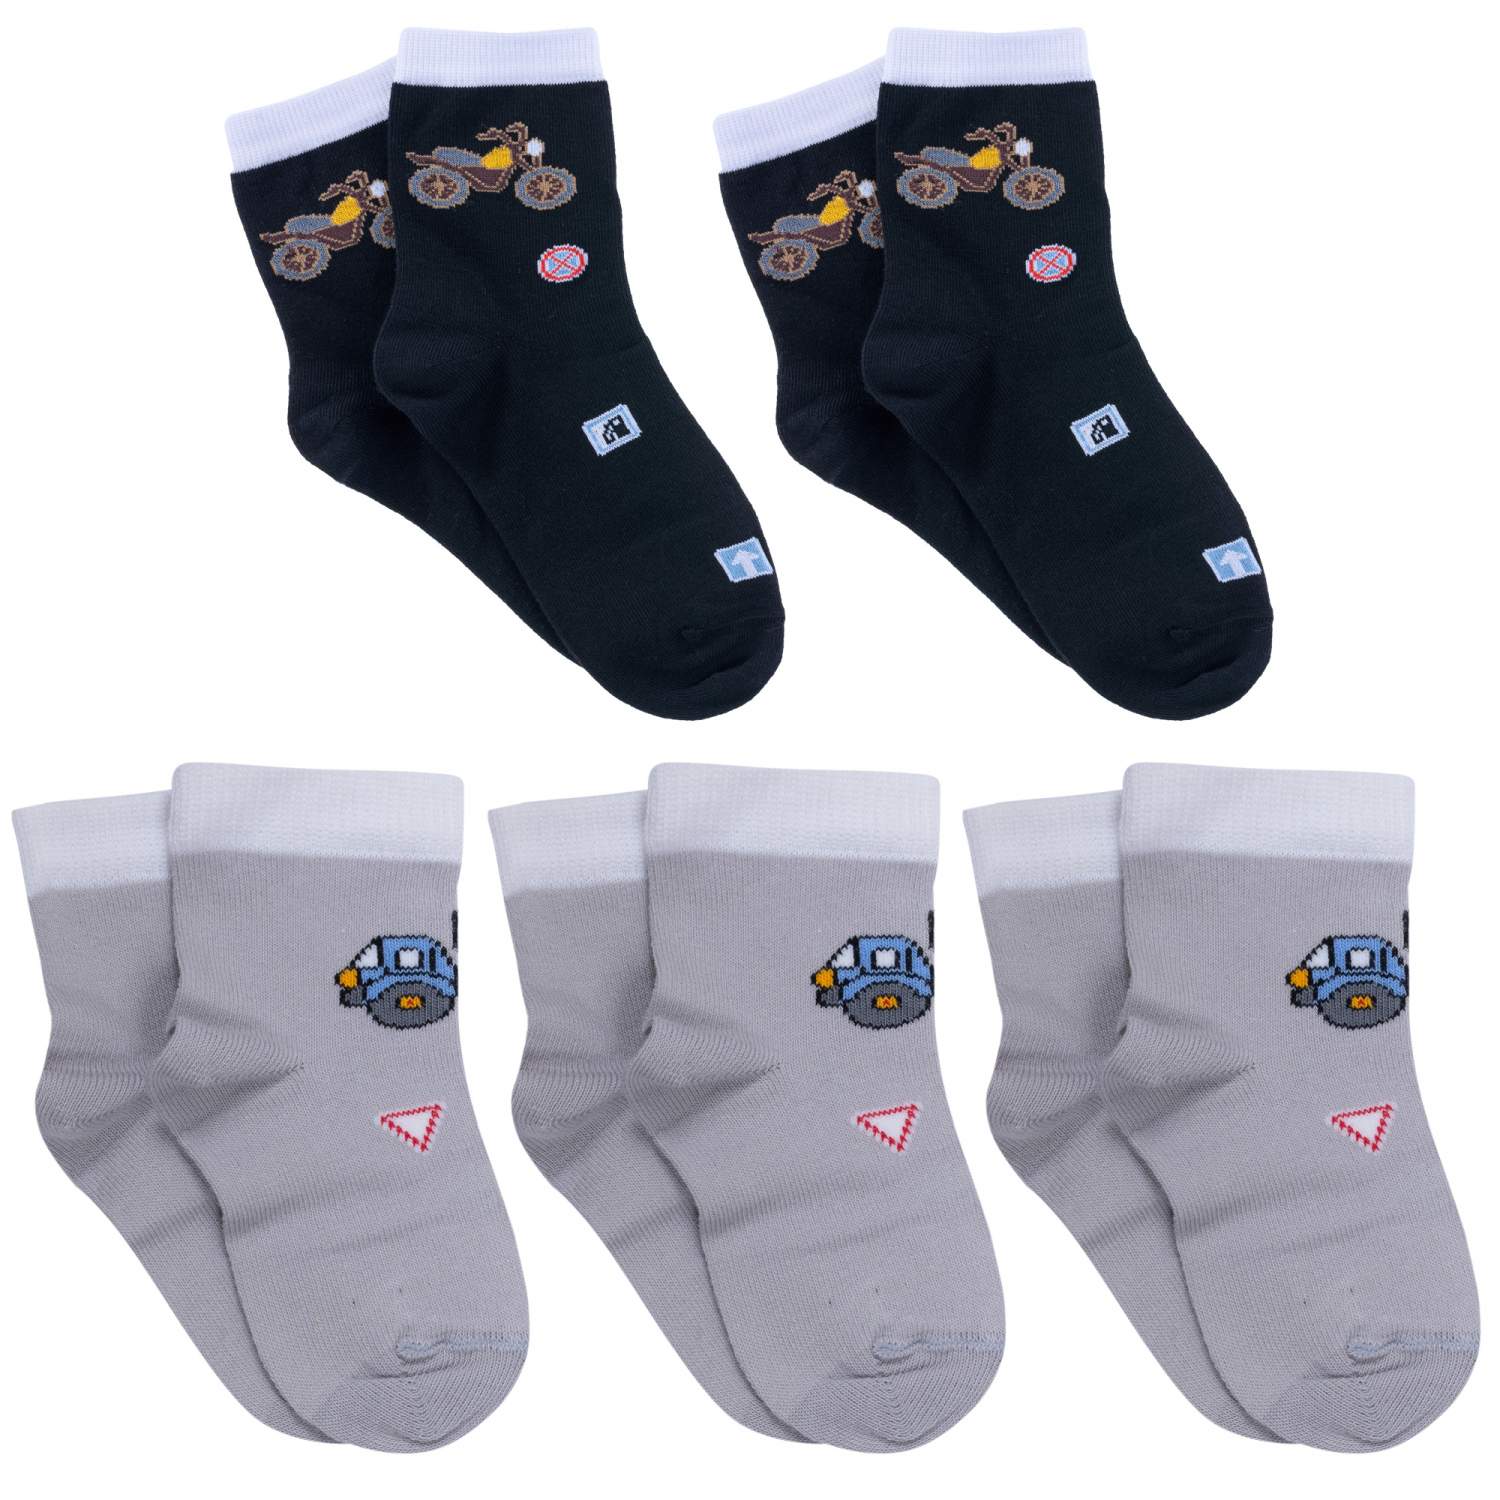 Купить носки для мальчиков LorenzLine 5-Л87 цв. серый; черный; белый р. 6-8, цены на Мегамаркет | Артикул: 600008572494